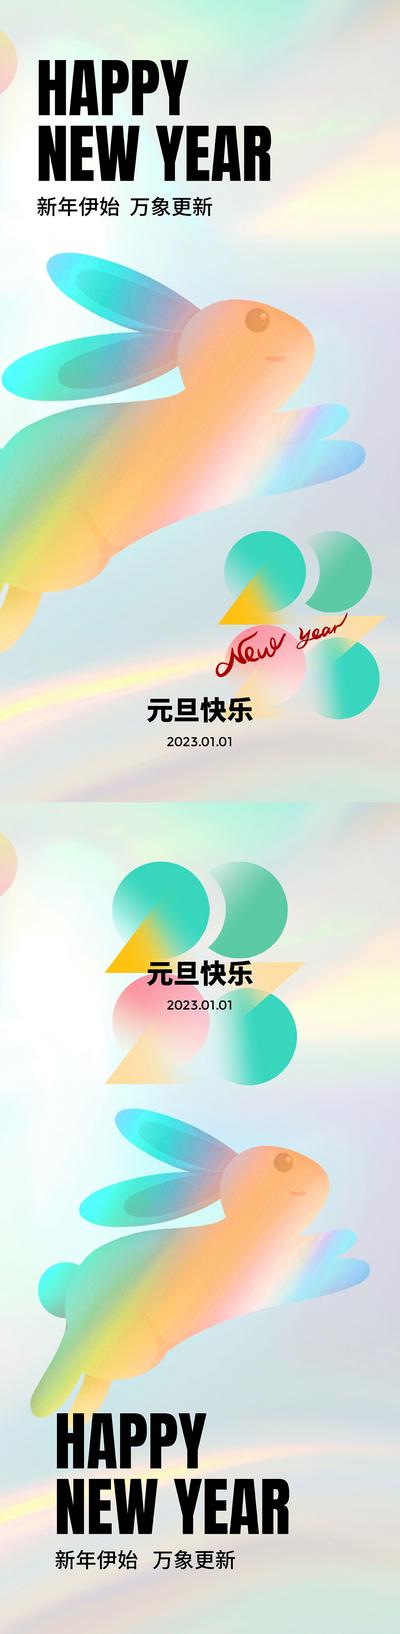 南门网 海报 公历节日 元旦节 跨年 2023 系列